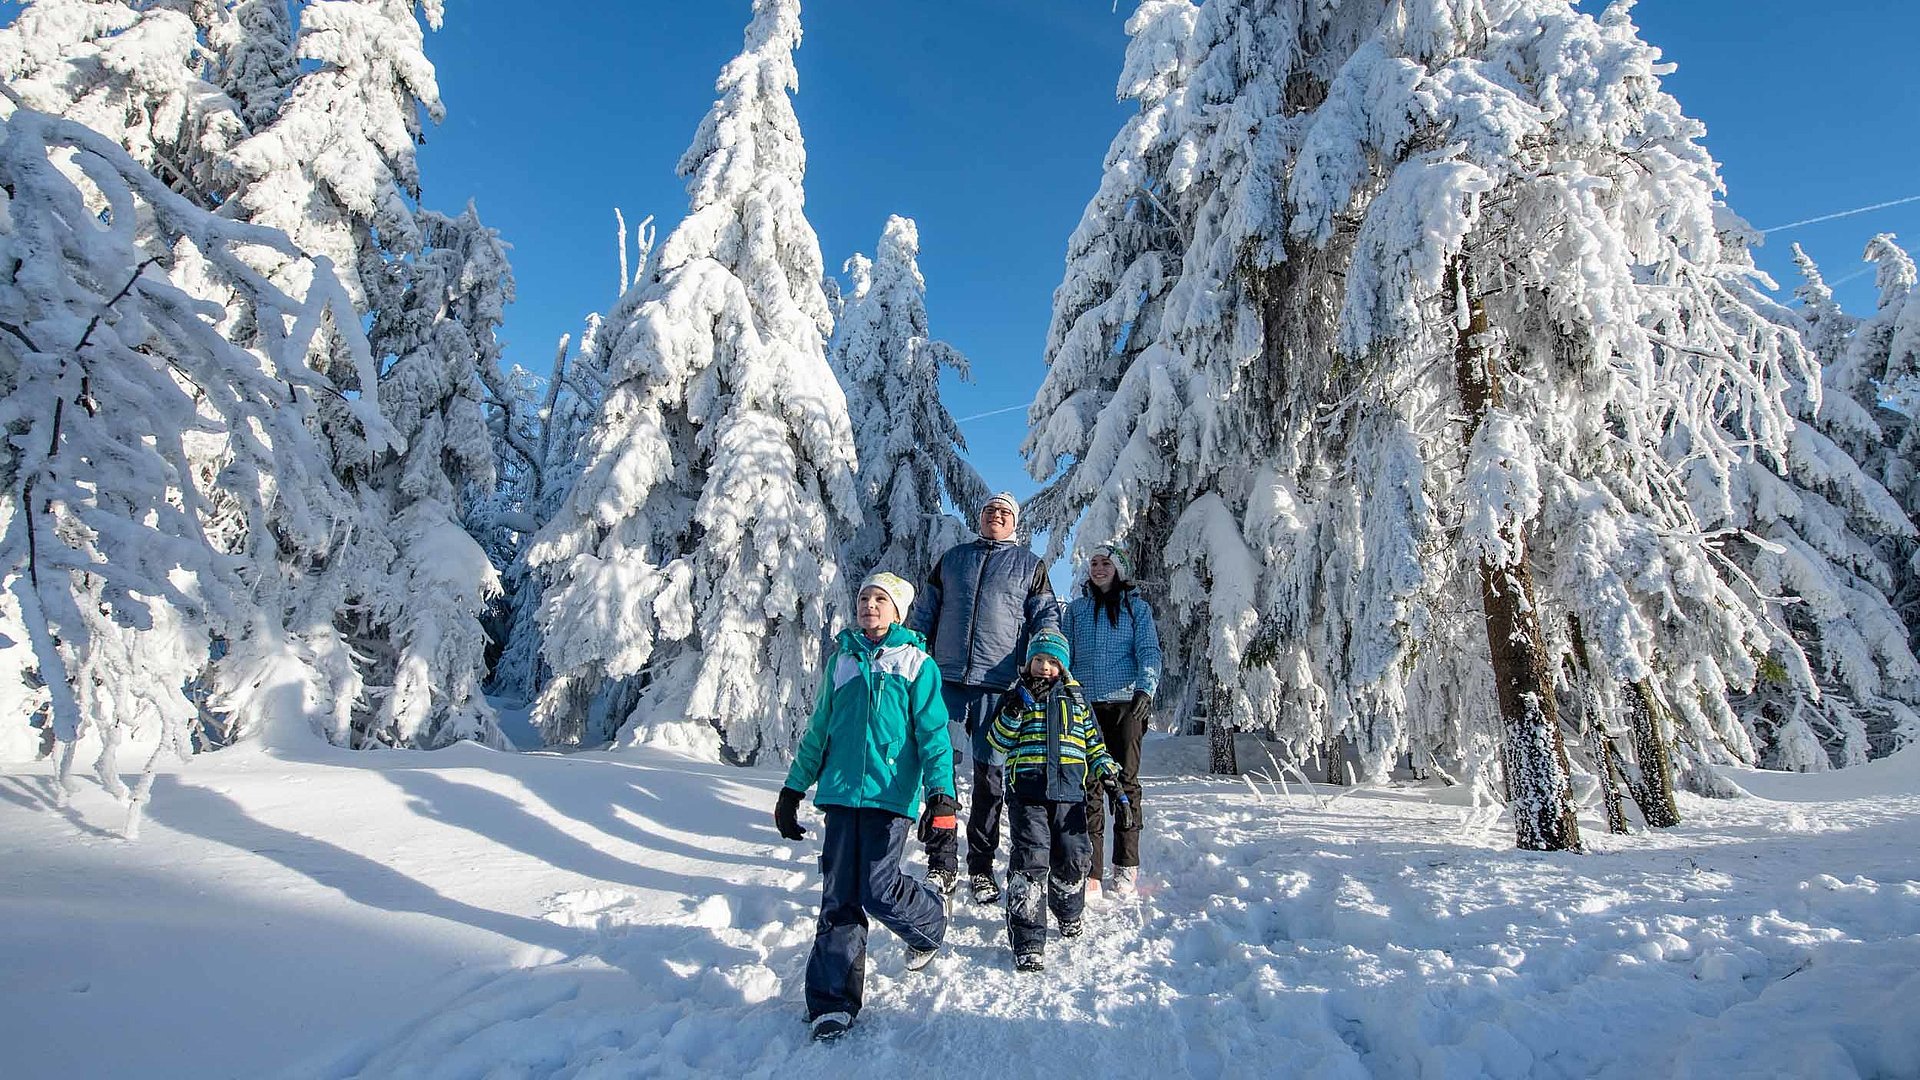 Wanderfreundliche Unterkünfte im Fichtelgebirge - Gruppe von Wanderern im schneebedeckten Wald